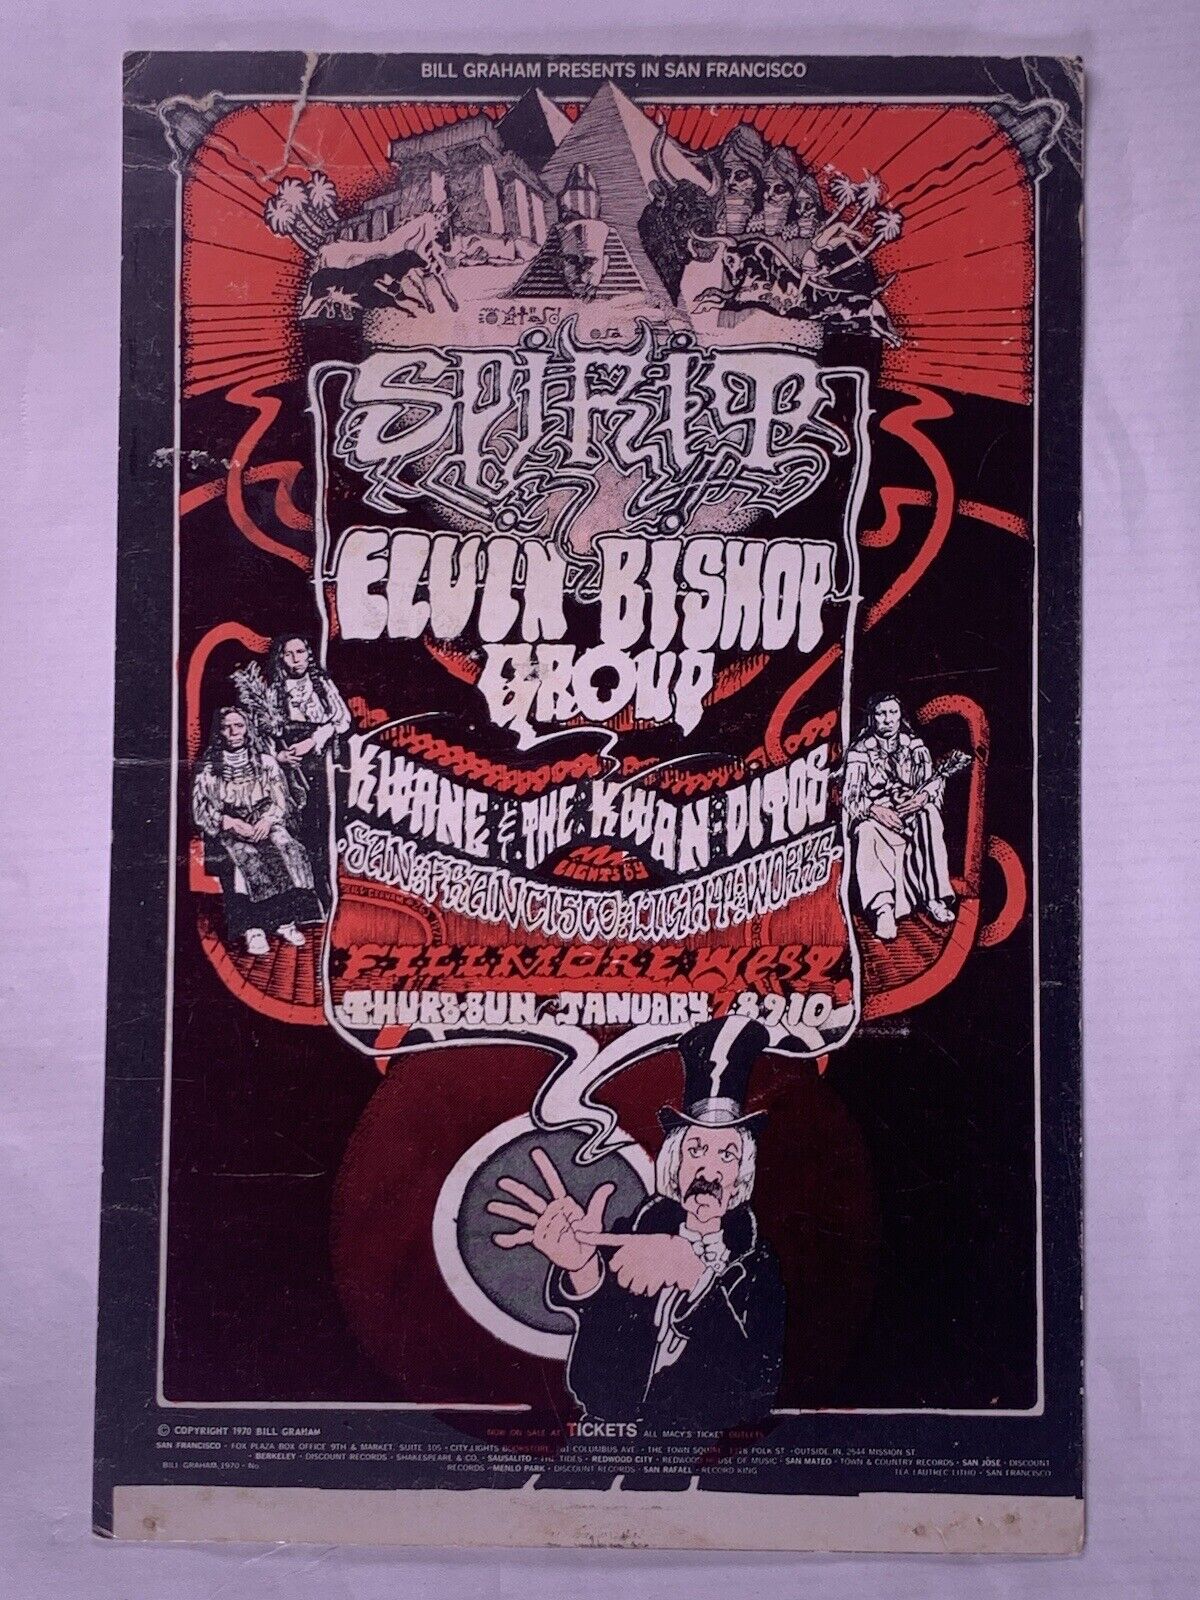 BG-265 Elvin Bishop Van Morrison Spirit Group Postcard Fillmore Ad Back 1971